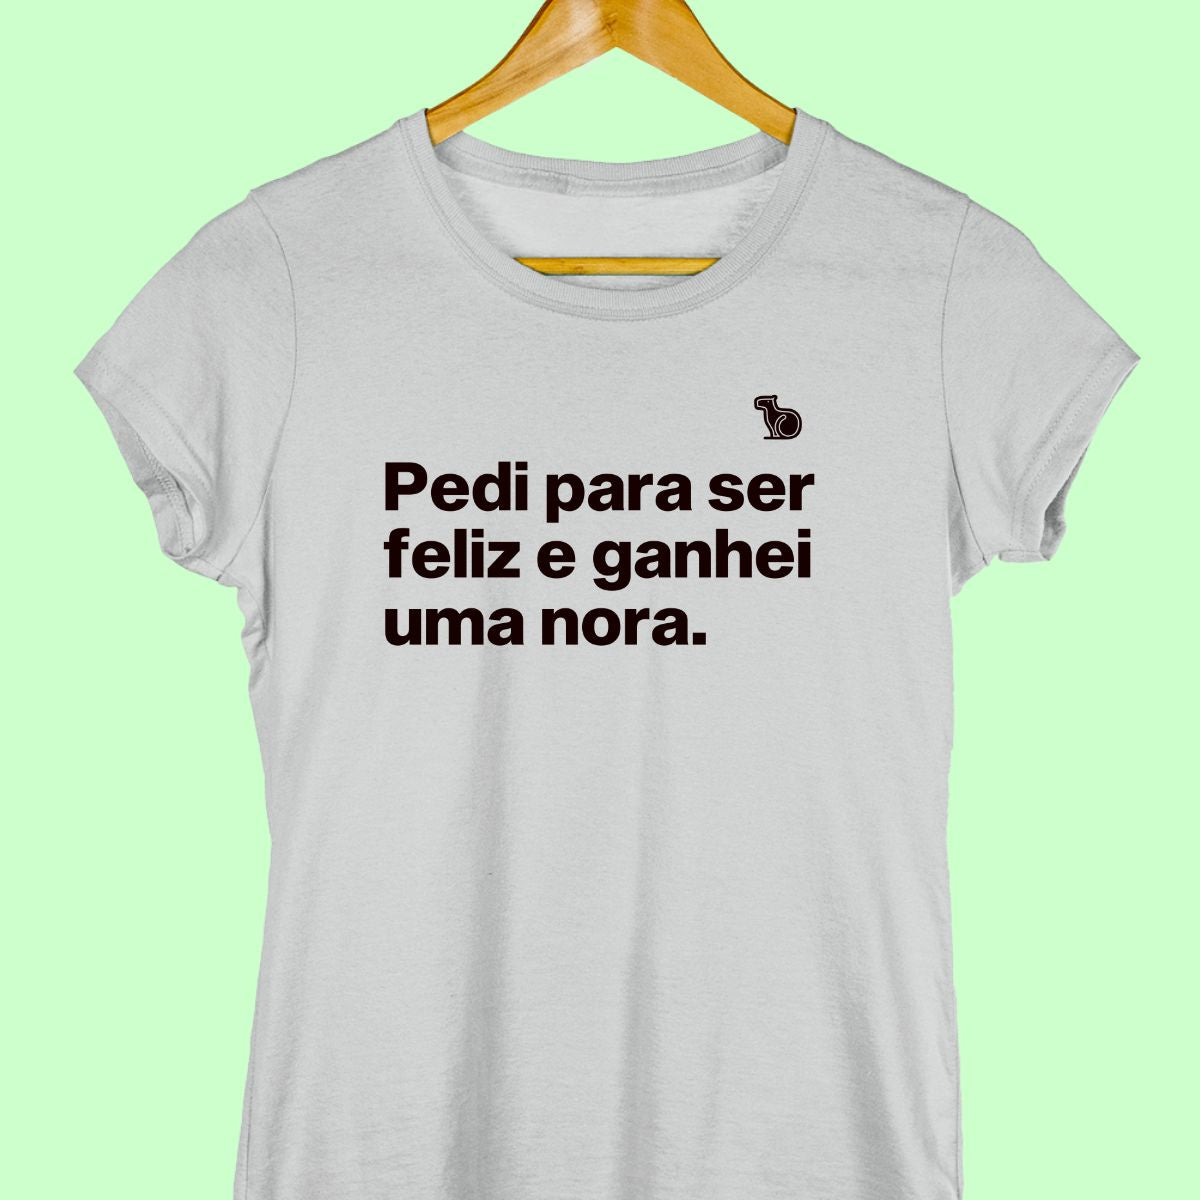 Camiseta com a frase "Pedi para ser feliz e ganhei uma nora." feminina cinza.